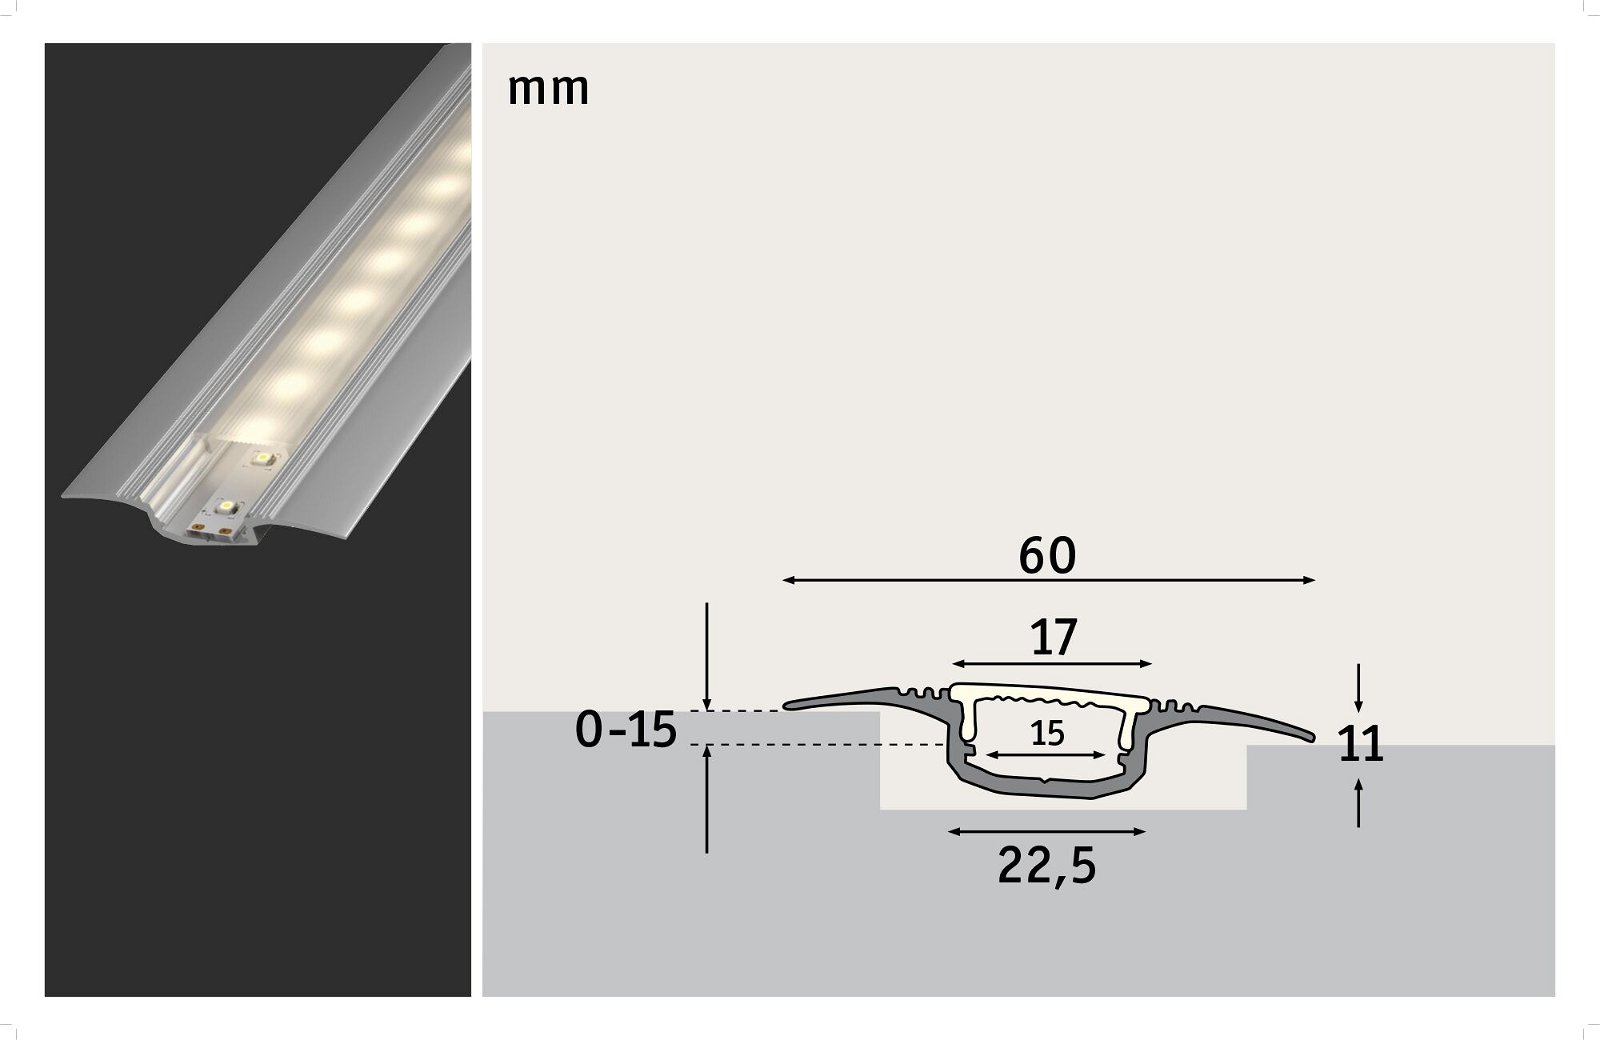 LED Strip recessed profile Step 1m Anodised aluminium/Satin